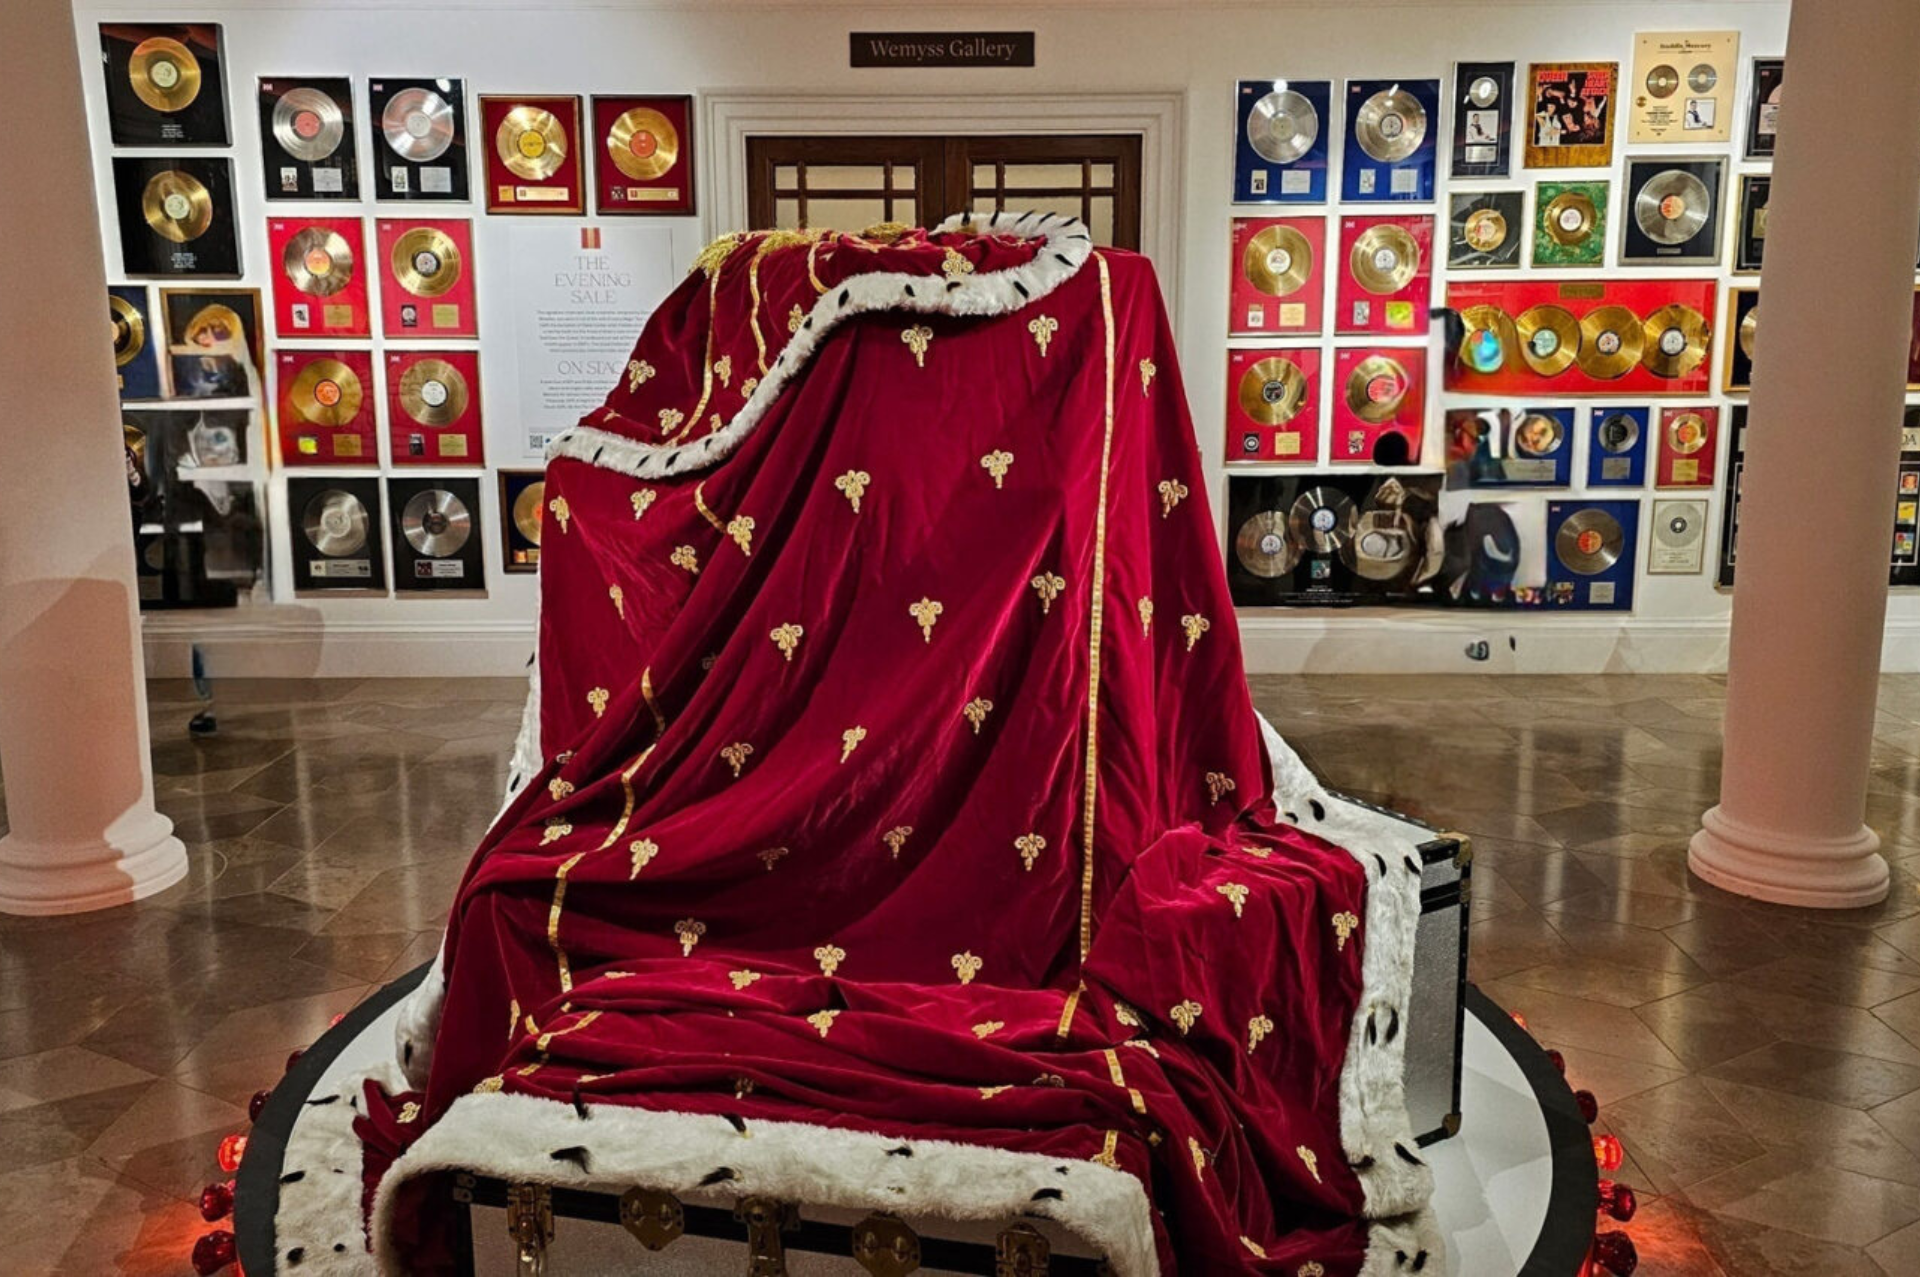 Freddie Mercury exposición 'A World of His Own' de Sotheby's